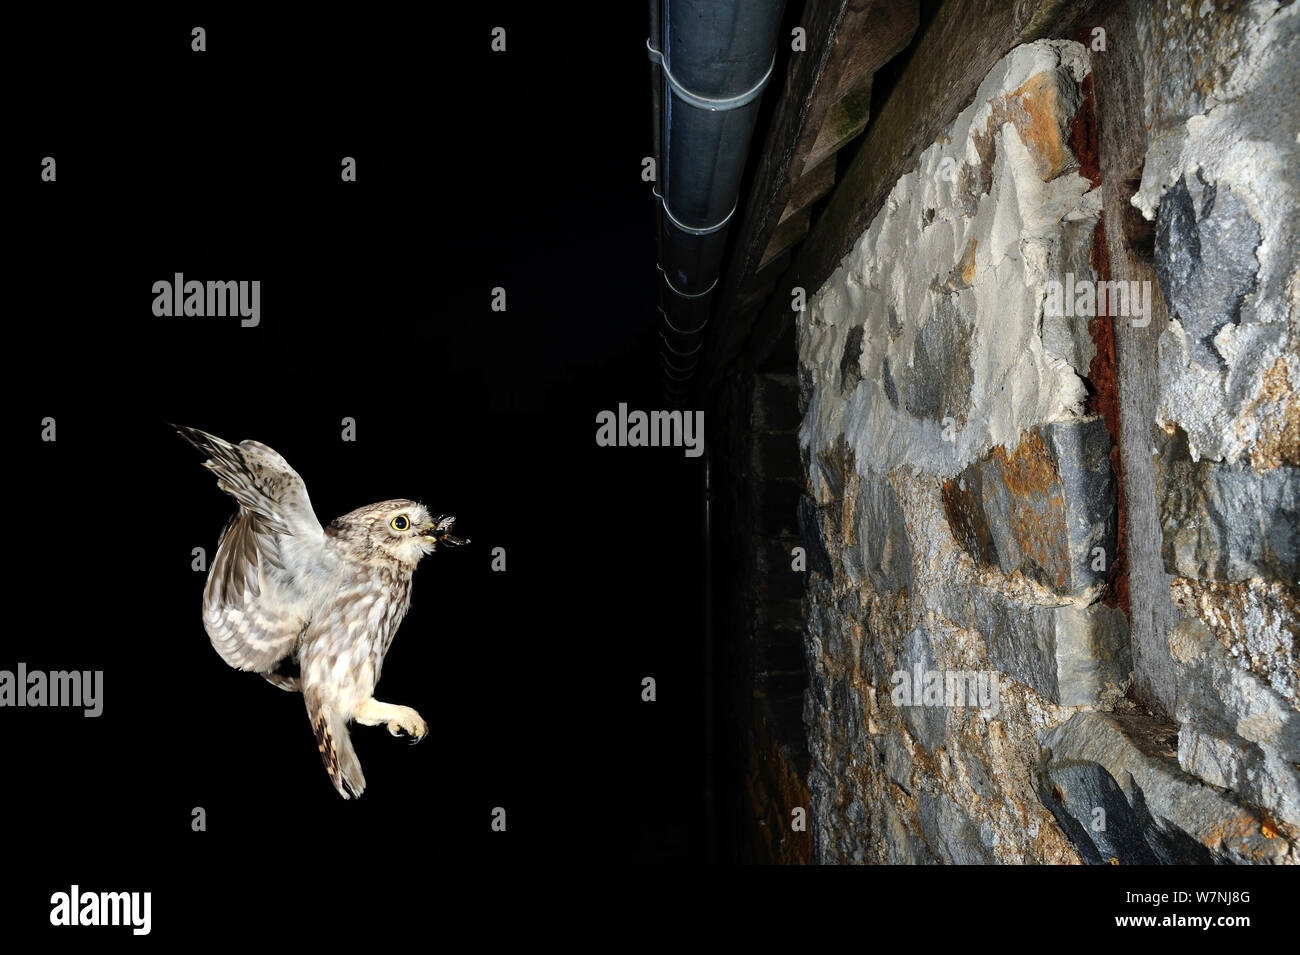 Chouette chevêche (Athene noctua) vol avec la proie de nicher dans les murs, la nuit, de la France, mai Banque D'Images